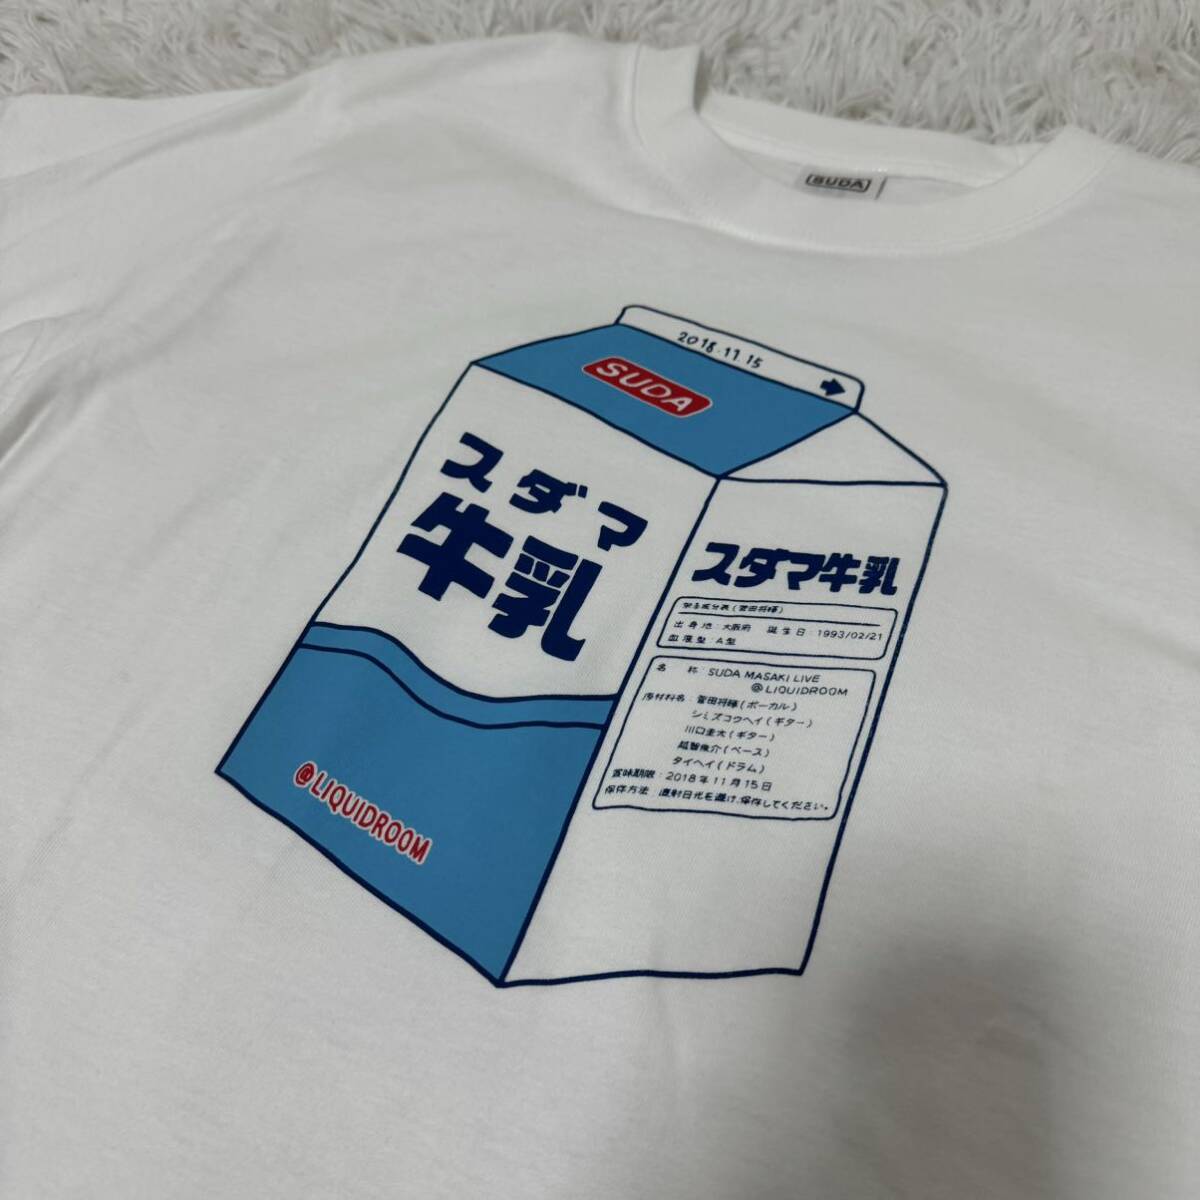 [ не использовался ]. рисовое поле .. Live футболка sdama молоко товары M размер футболка полная распродажа товар M размер 